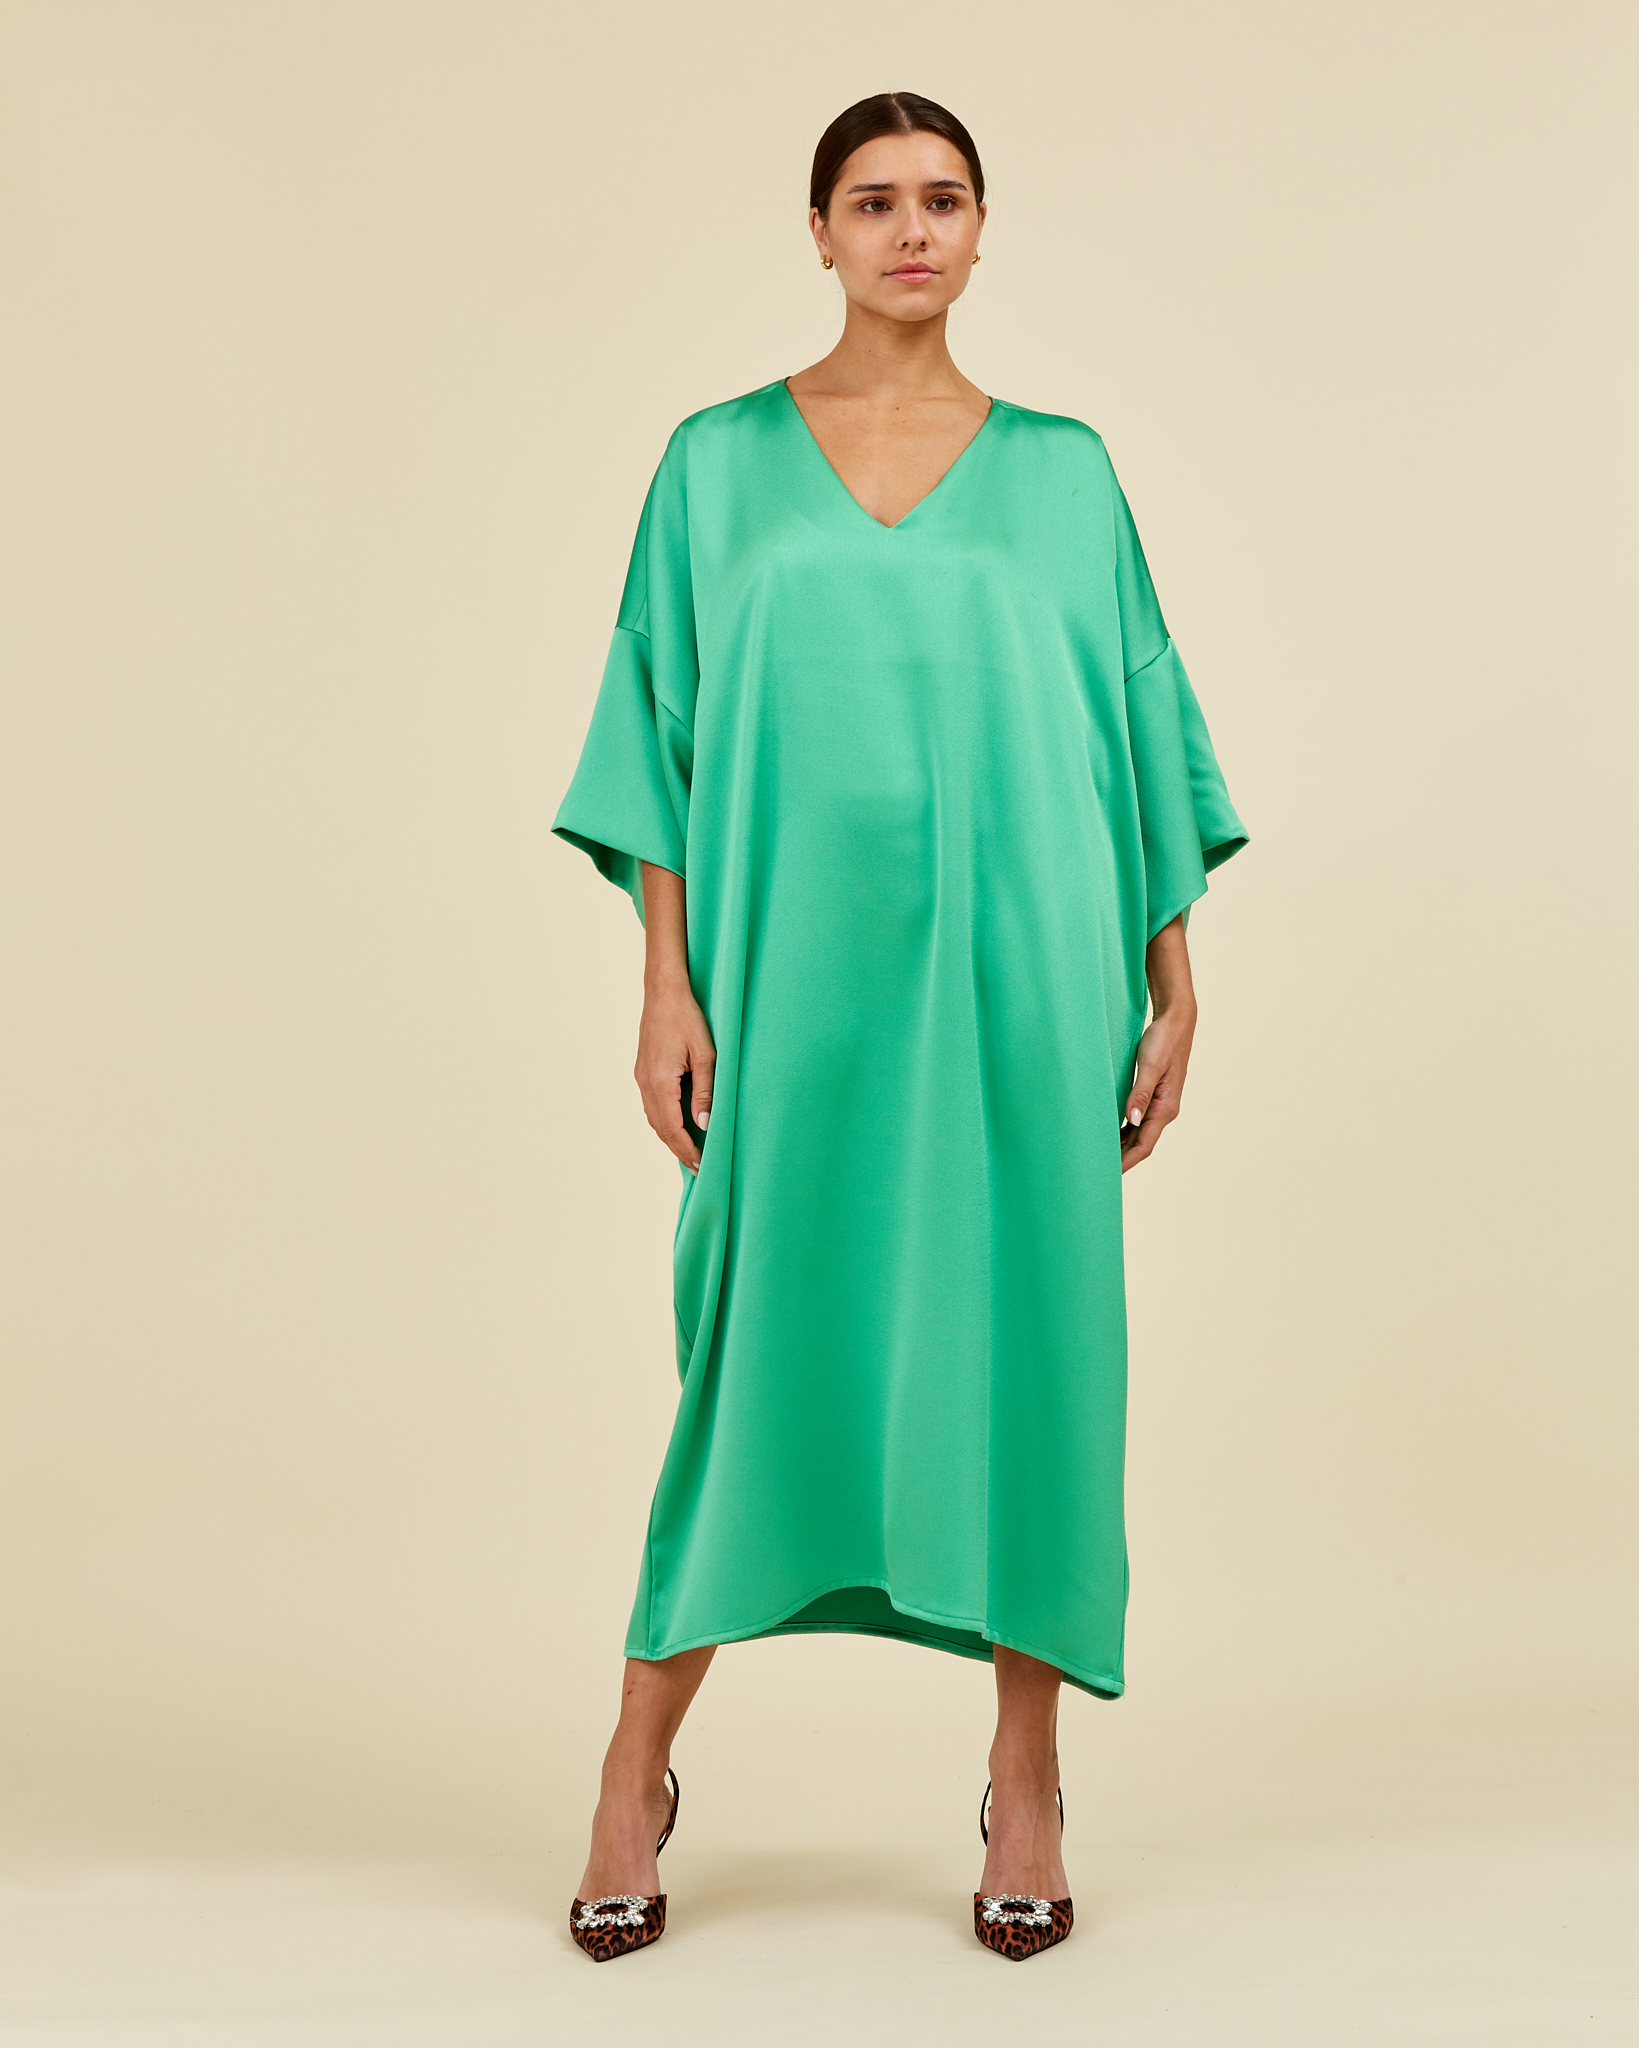 https://www.seamehappy.be/wp-content/uploads/2022/08/Sea-Me-Happy-Paloma-Dress-Long-spearmint-green-front1.jpg